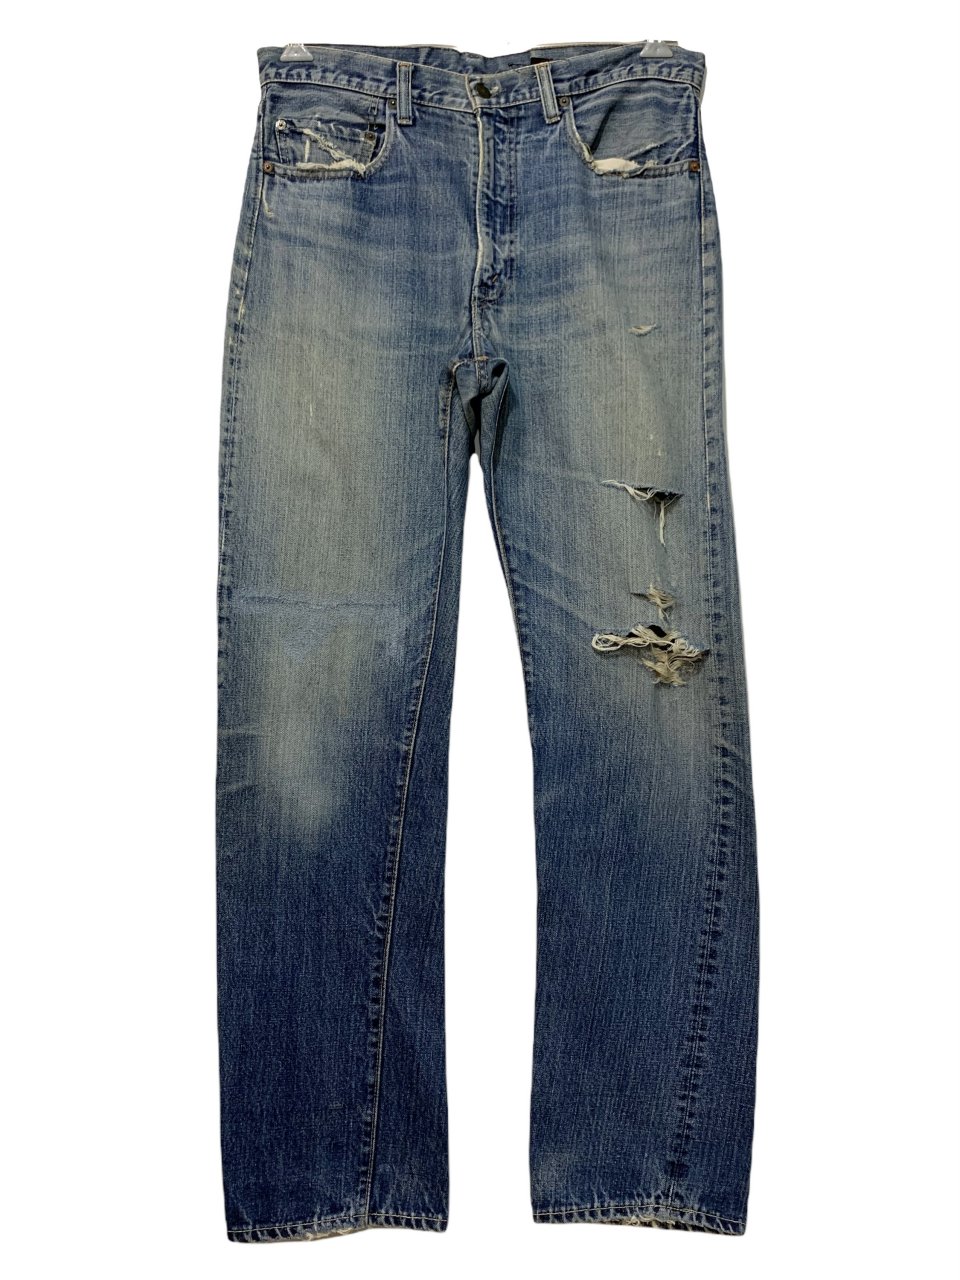 70s LEVIS 505 single vintage denim pants